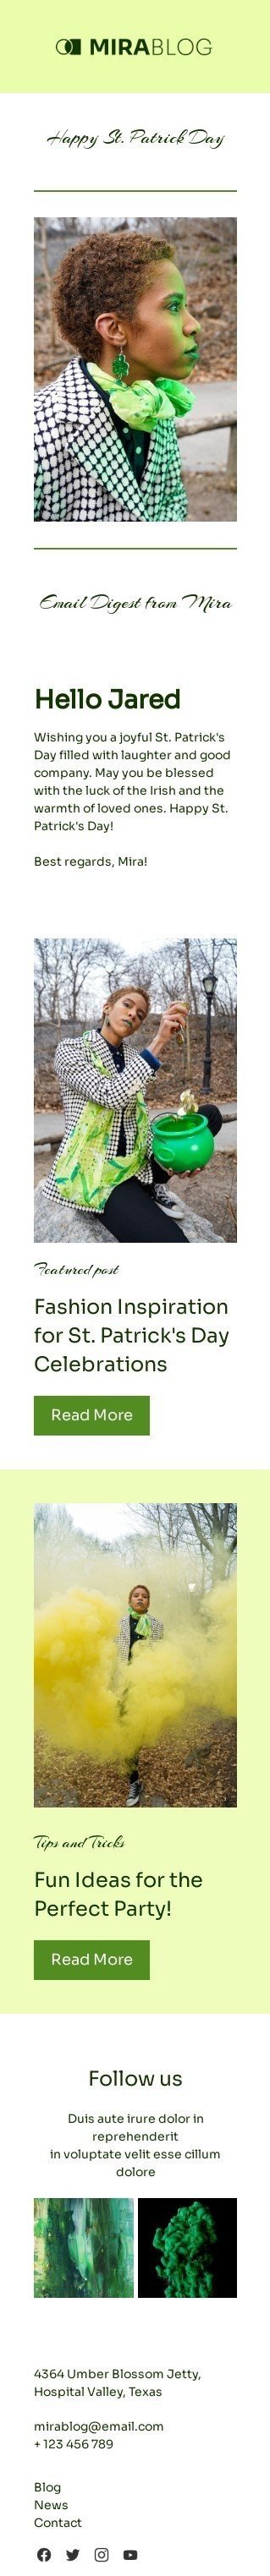 Plantilla de correo electrónico «La suerte de los irlandeses» de Día de San Patricio para la industria de publicaciones y blogs Vista de móvil